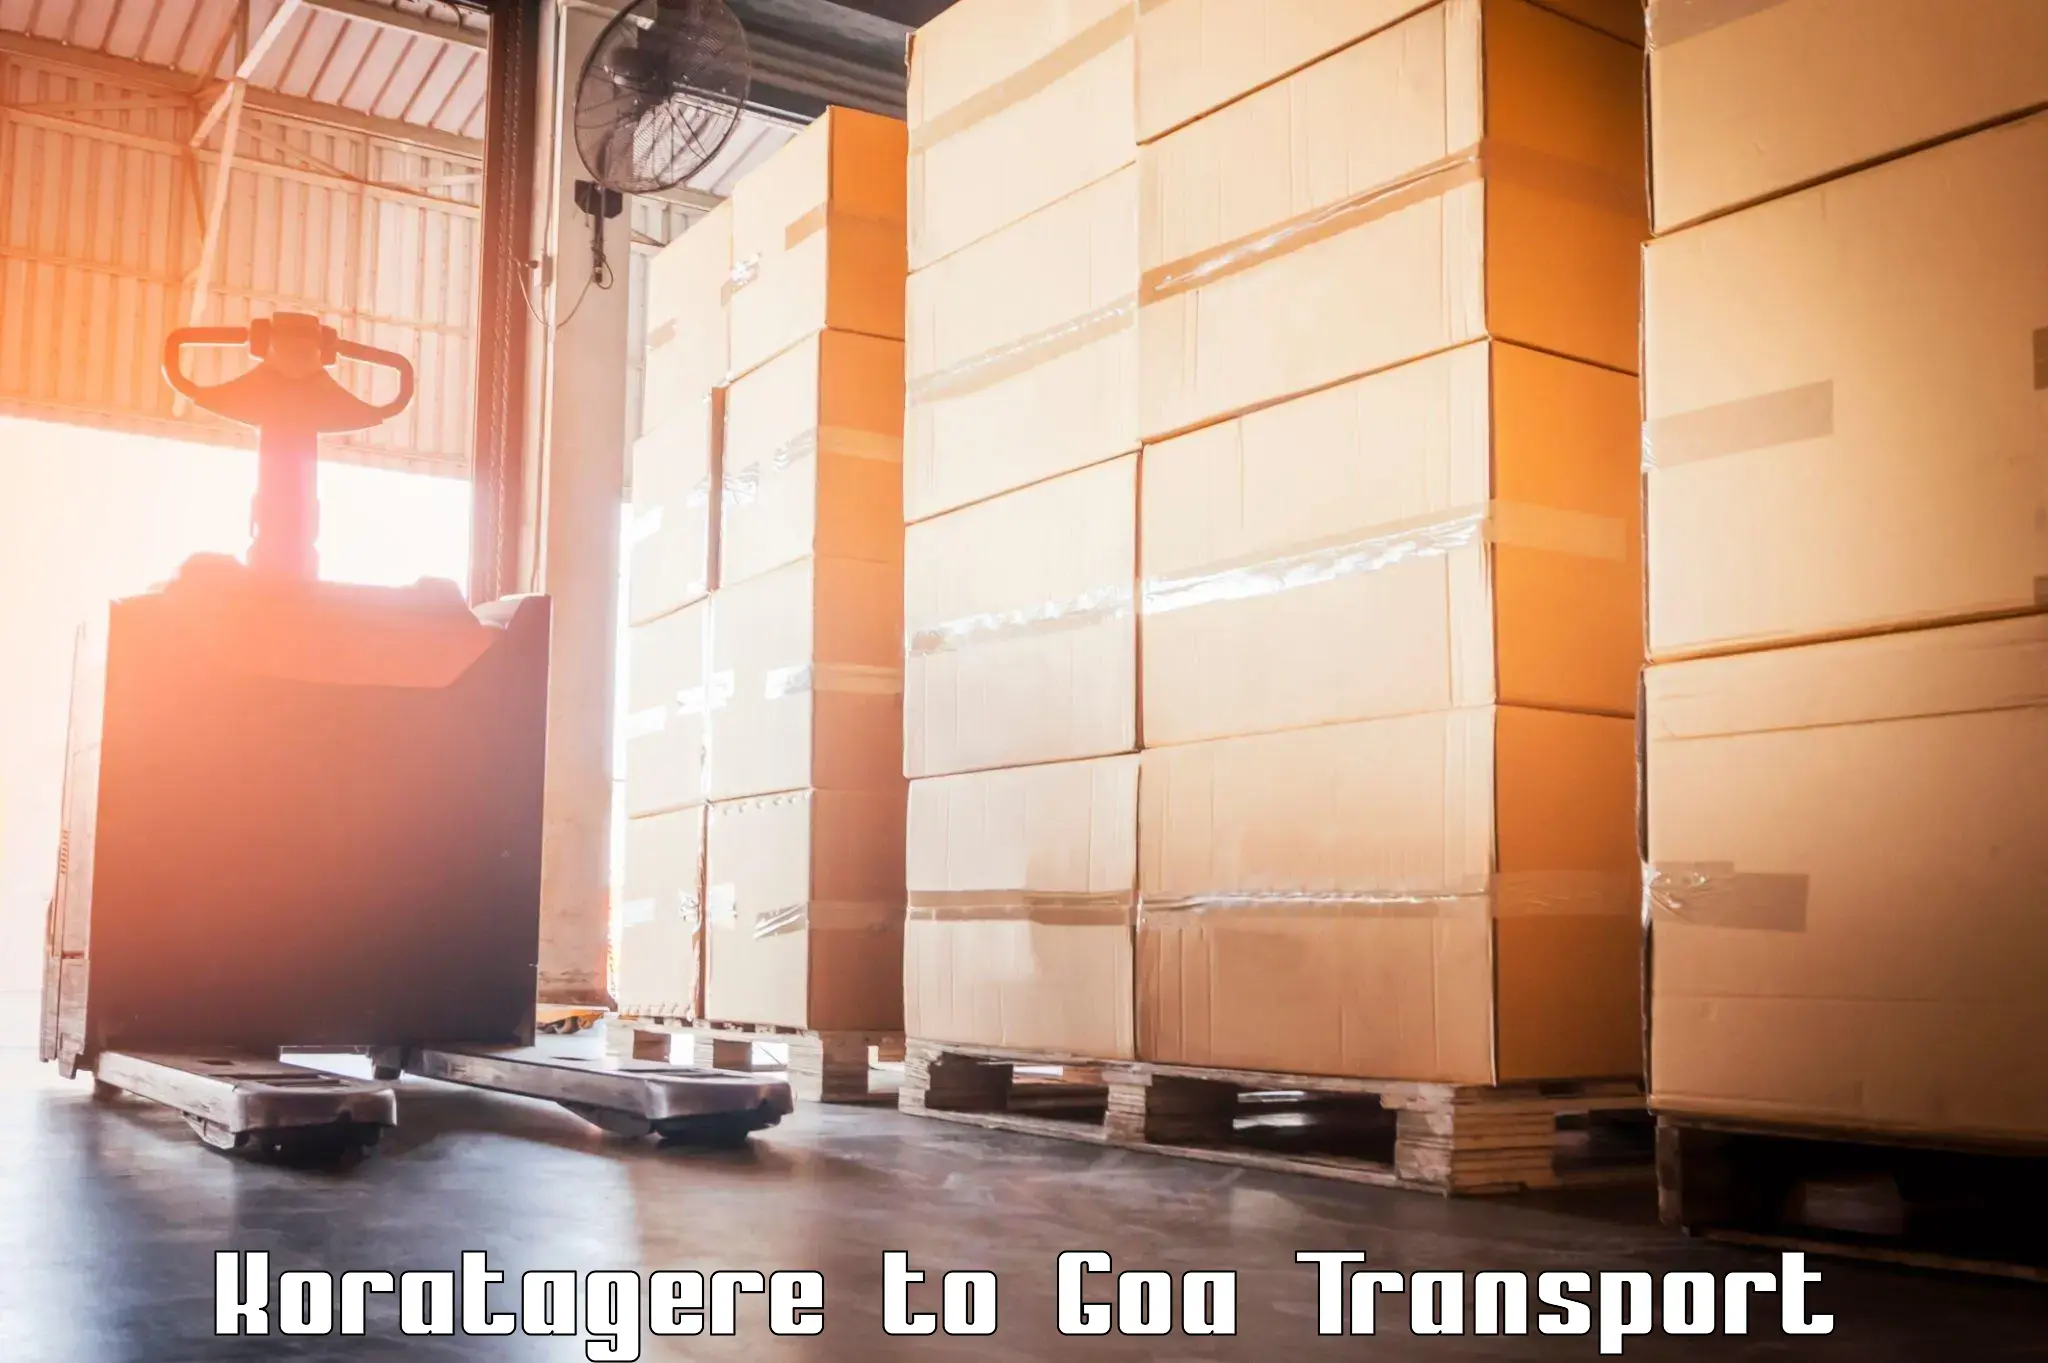 Cargo train transport services Koratagere to Sanvordem